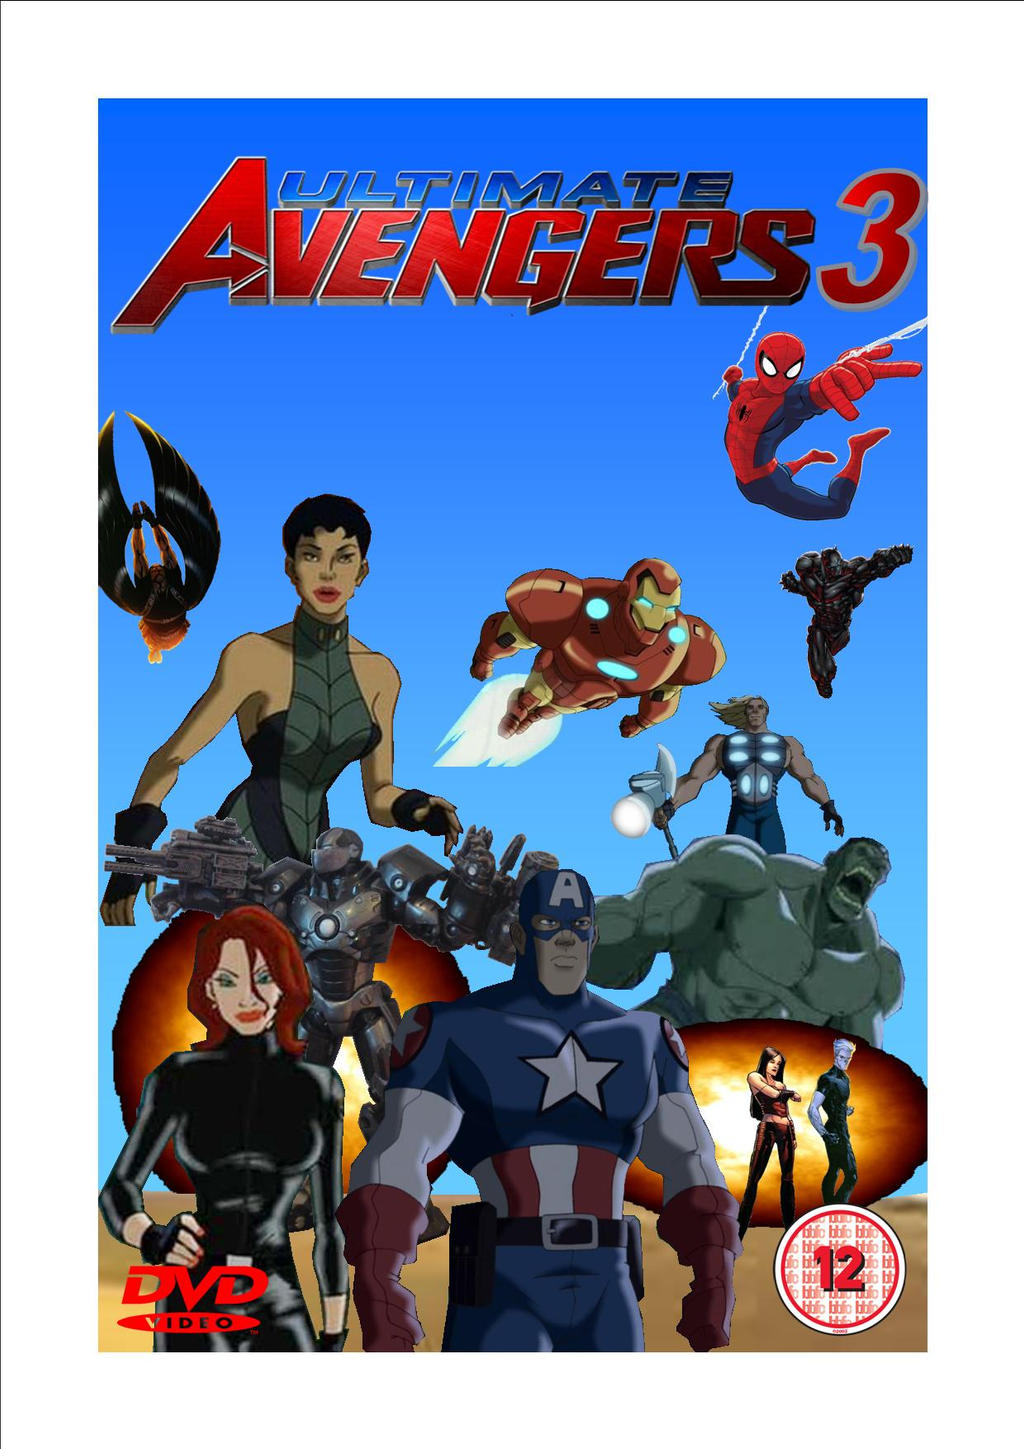 garage ejendom lyd Ultimate Avengers 3 by Justiceavenger on DeviantArt